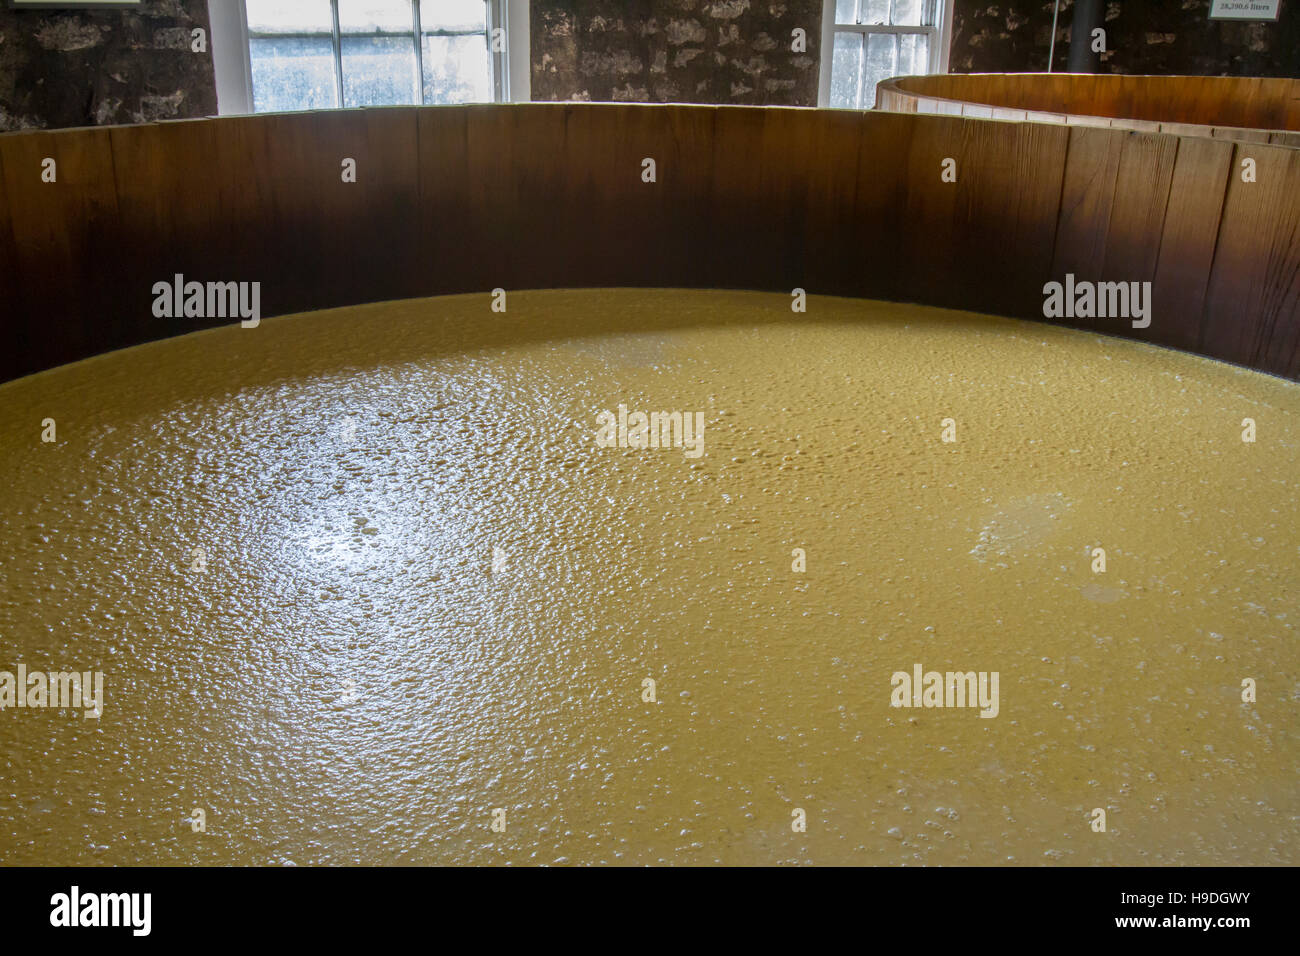 Mash in botte di rovere di vasche di fermentazione all'interno della distilleria di pietra. Foto Stock